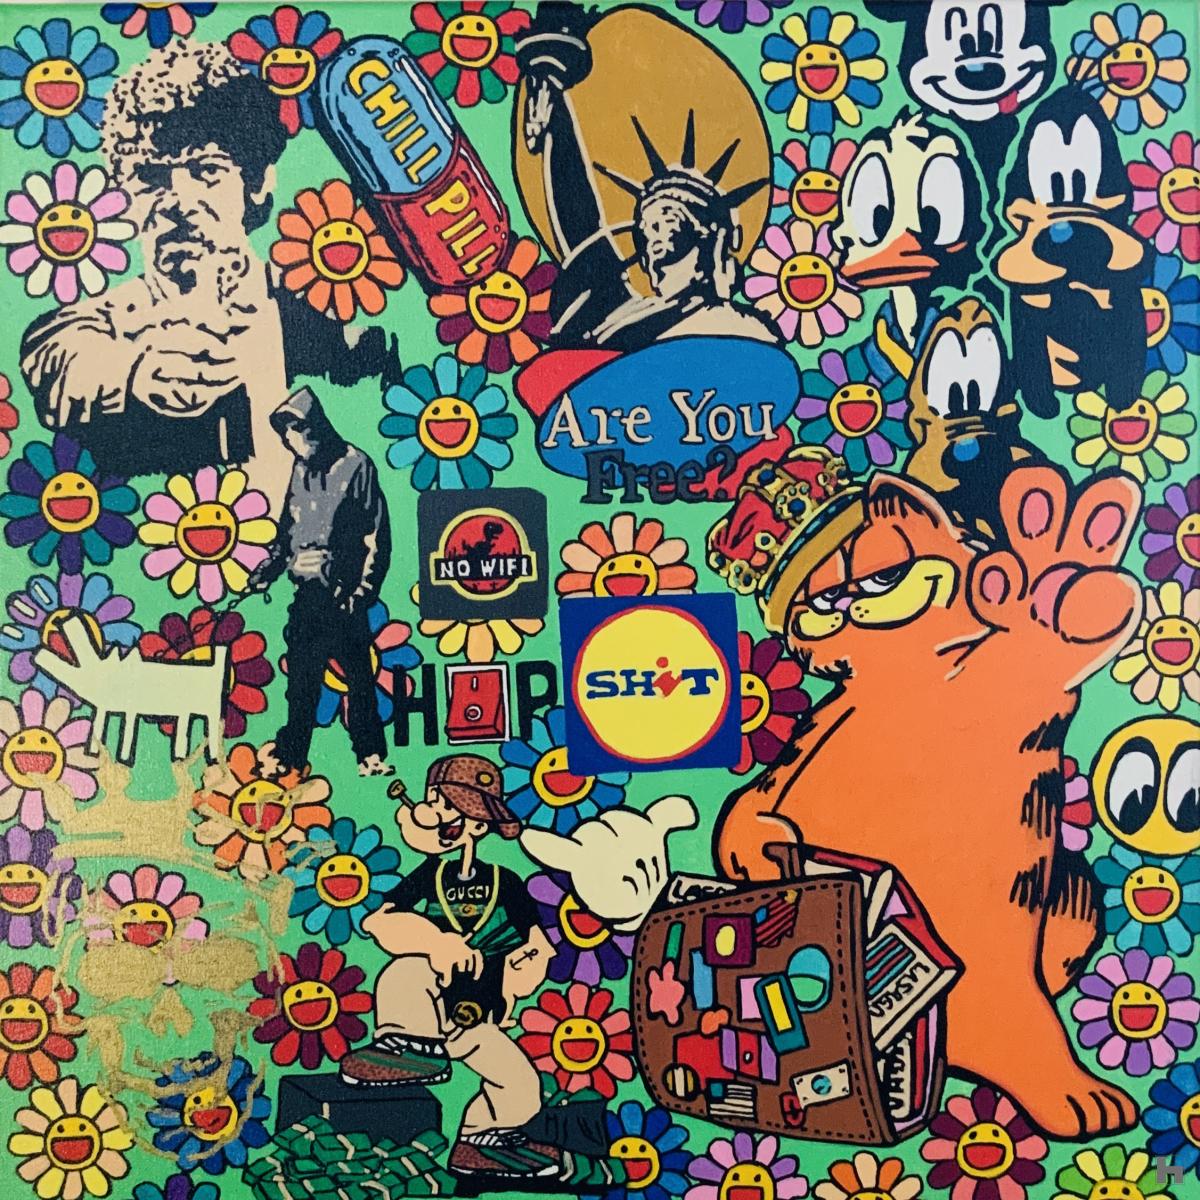 Urban mix van popart icons op een kleurige, fleurig Murakami achtergrond